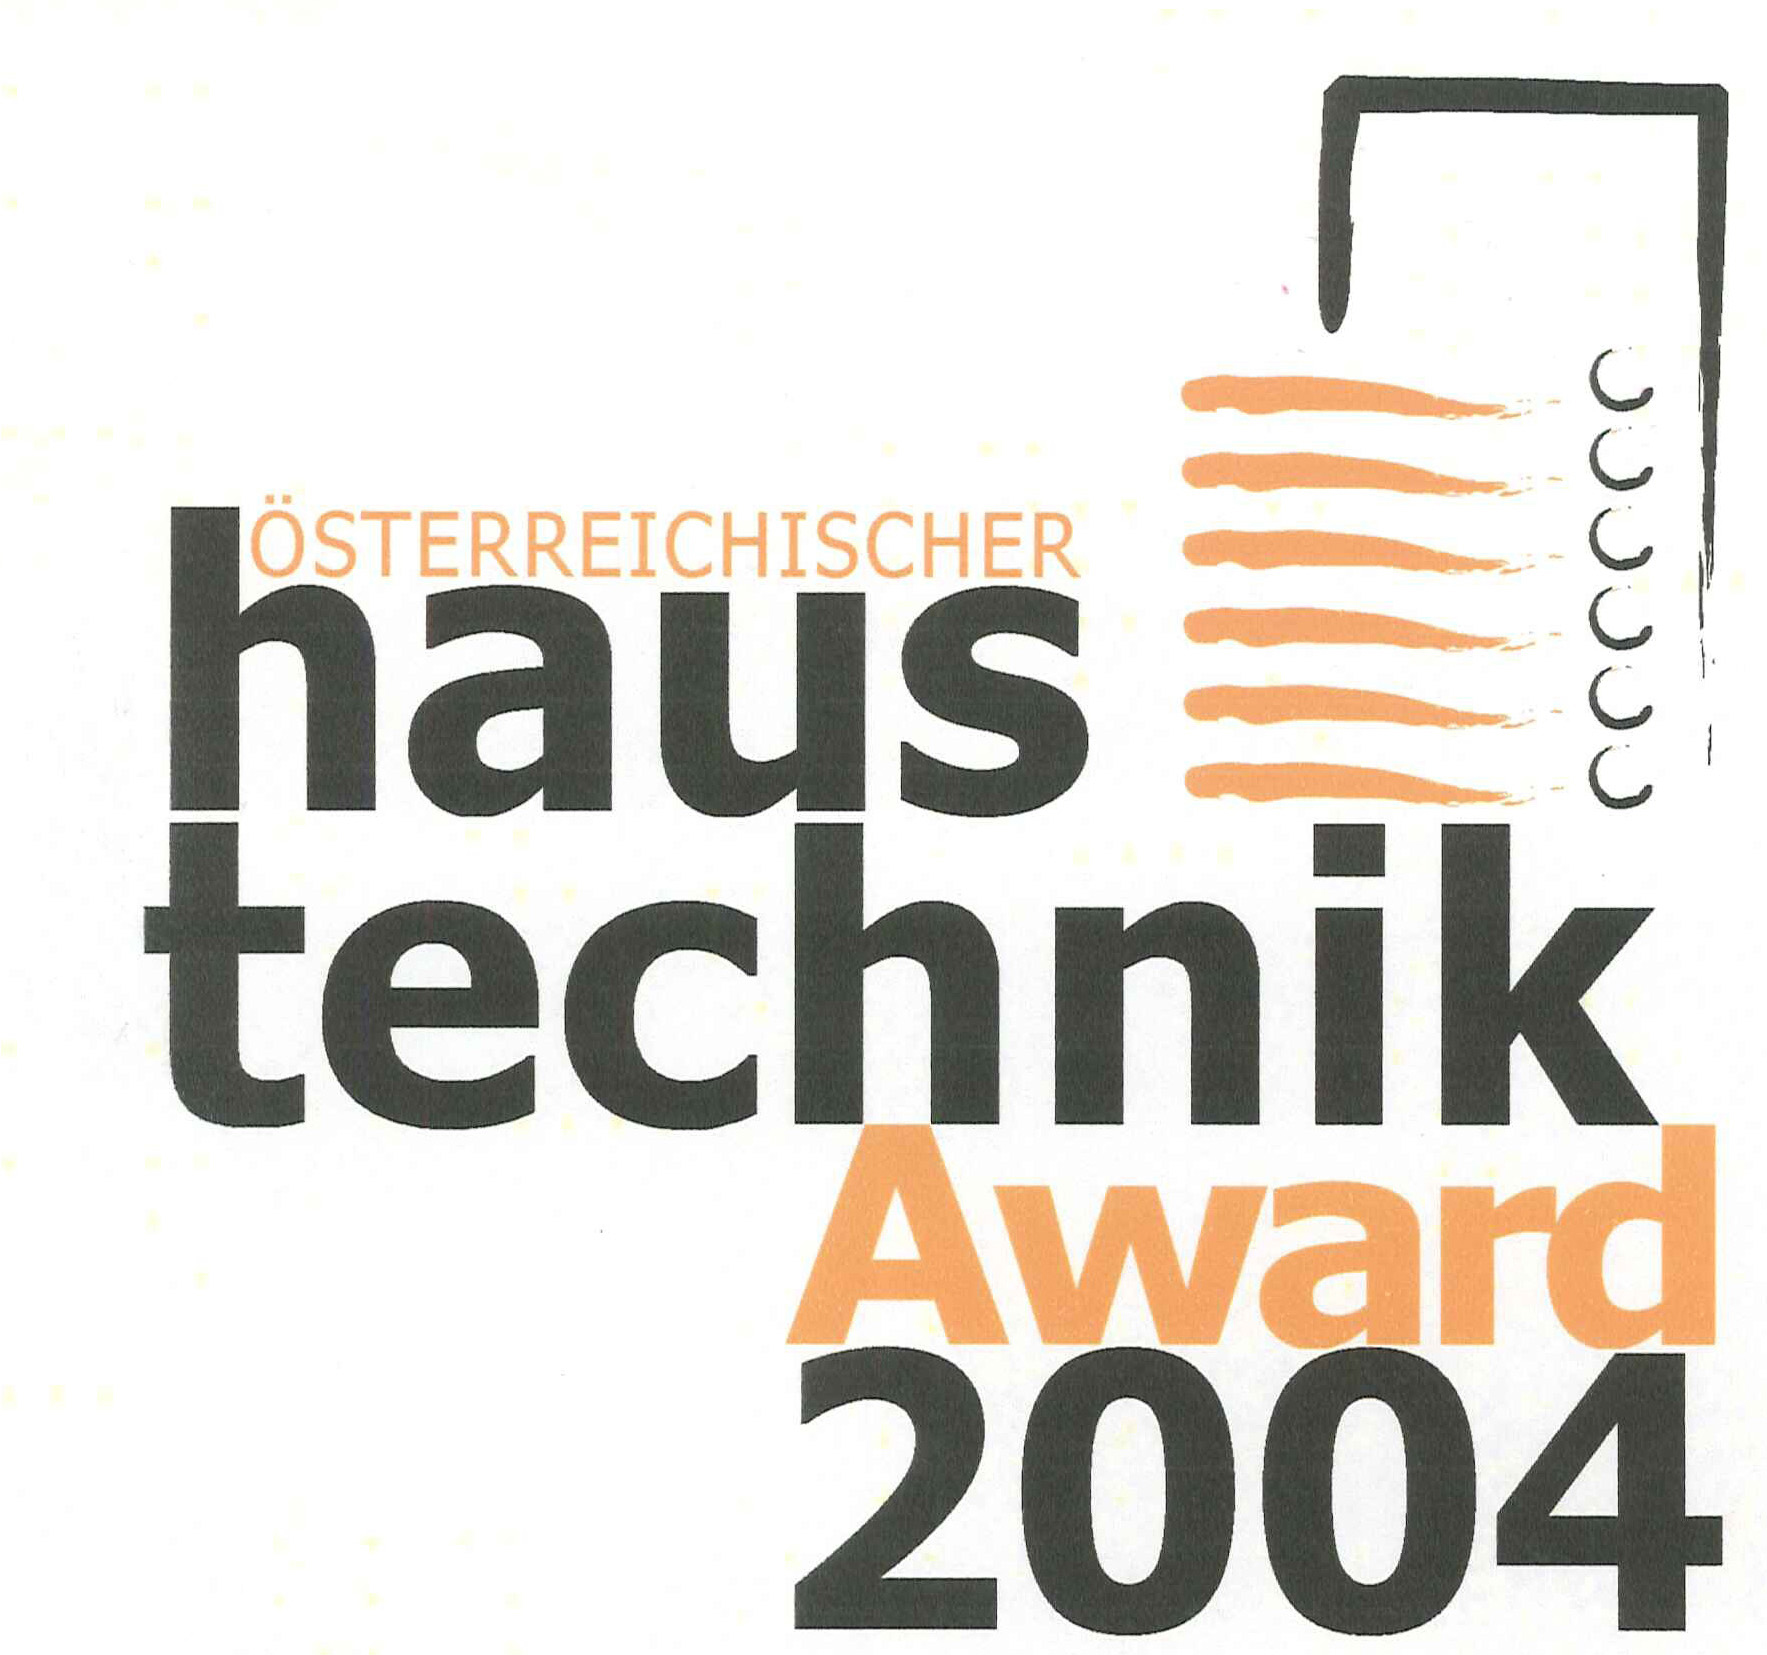 Haustechnik Award 20114 für SOLARFOCUS